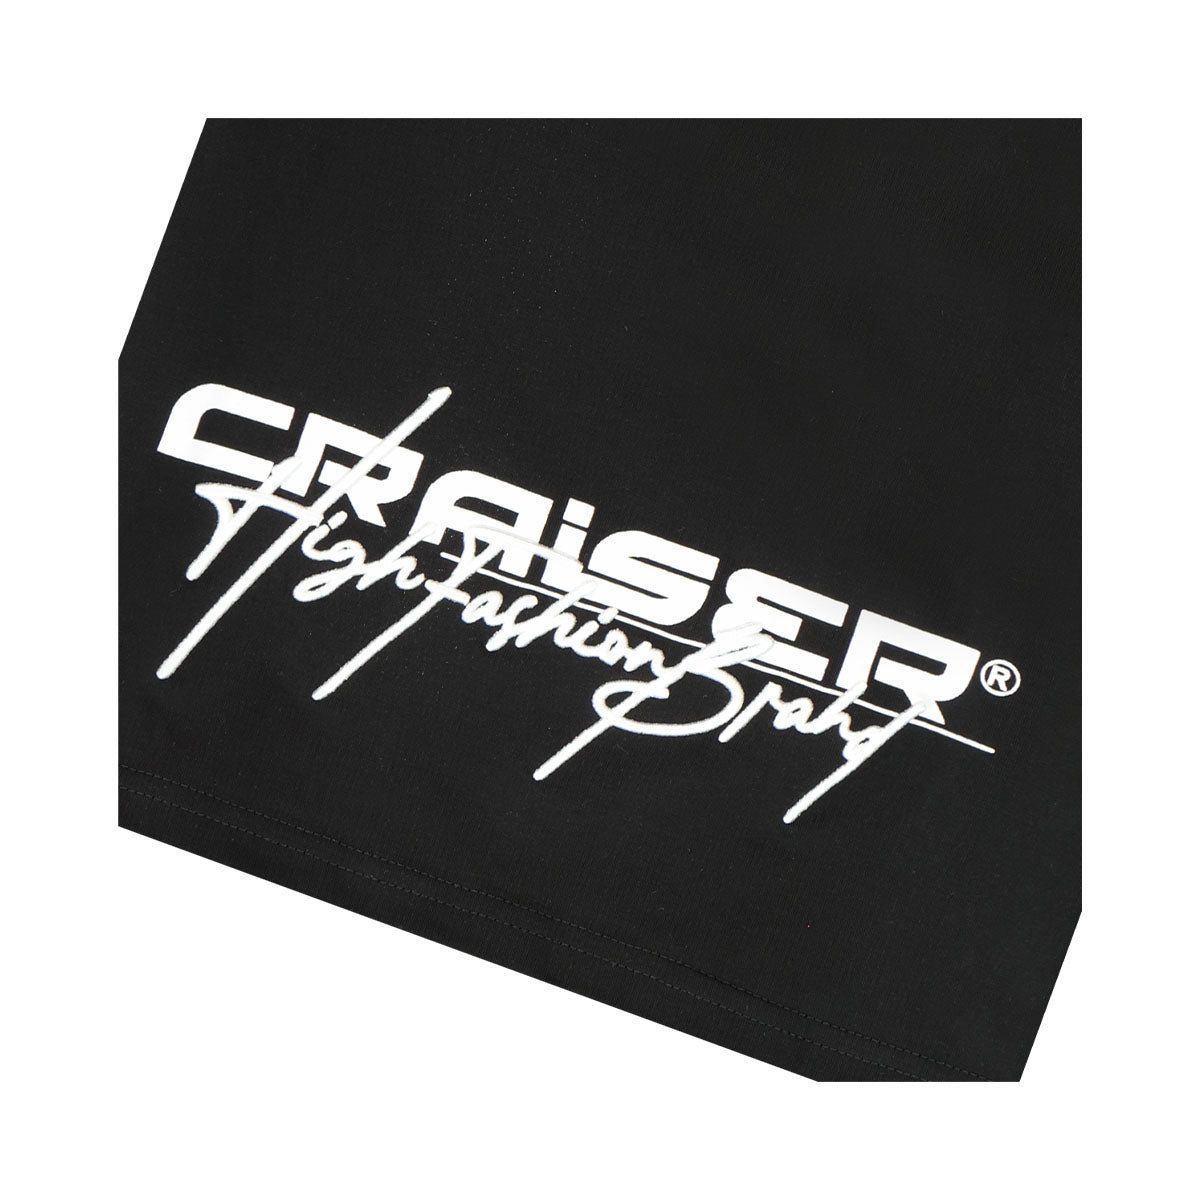 חולצת טי שרט CRAISER הדפס לוגו לילדים